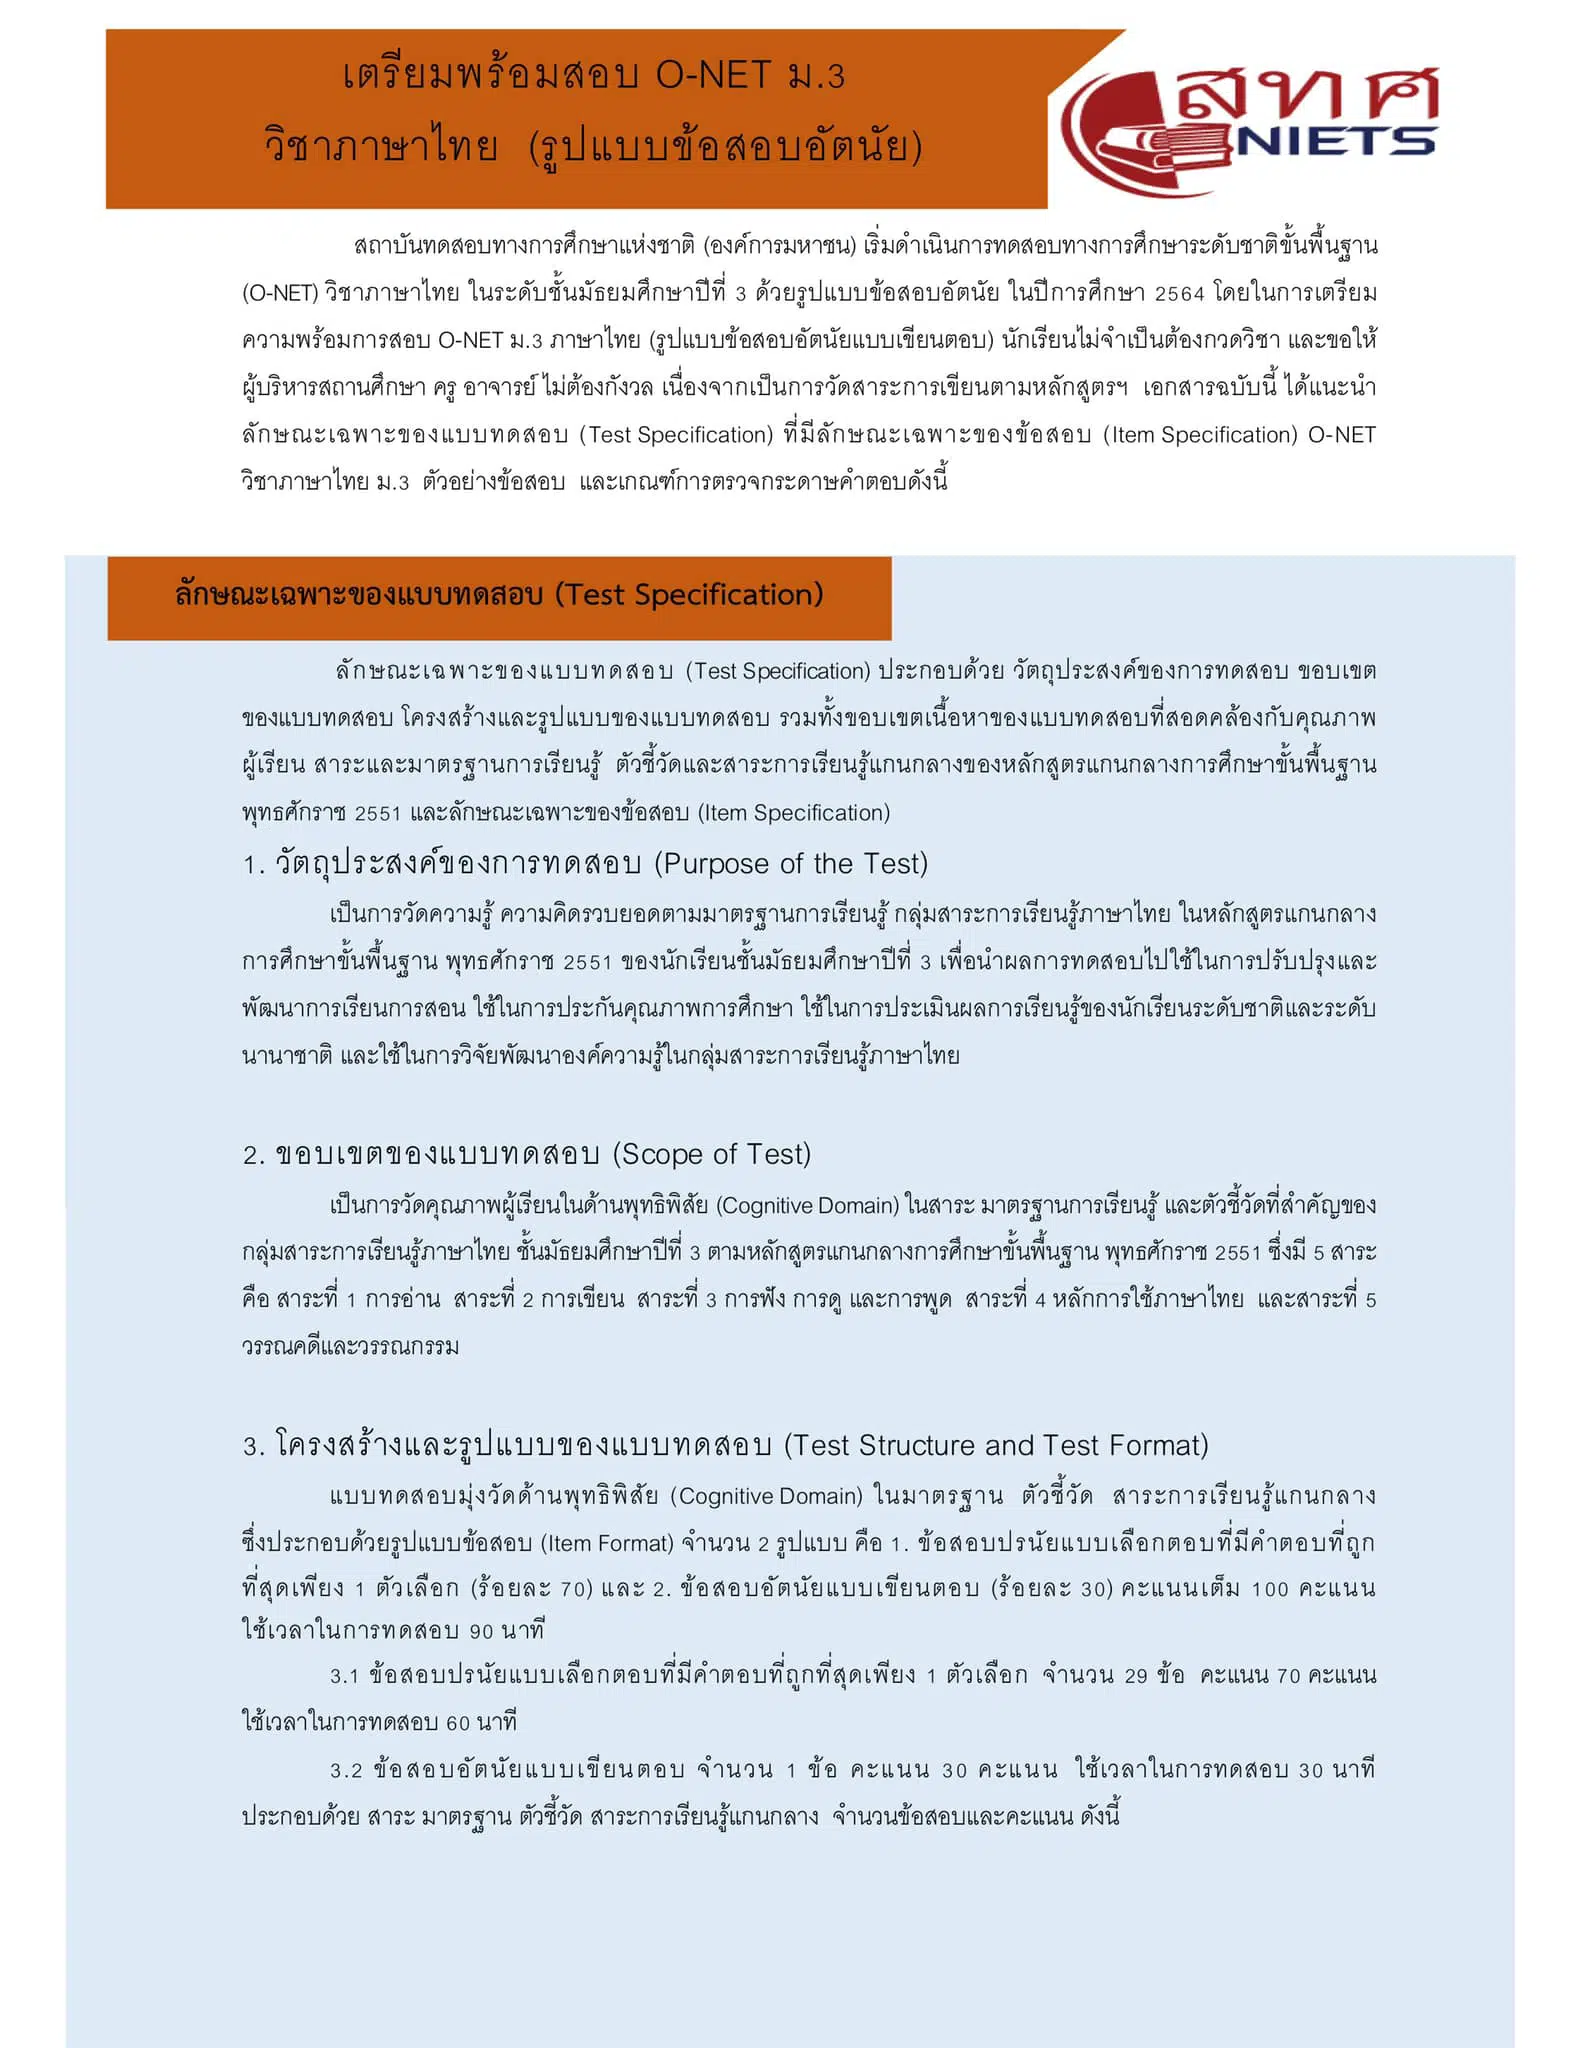 สรุปเทคนิคการทำข้อสอบอัตนัย วิชาภาษาไทย O-NET ชั้น ม.3 จากเอกสารที่เผยแพร่โดย สทศ. เครดิต ครูวรยา